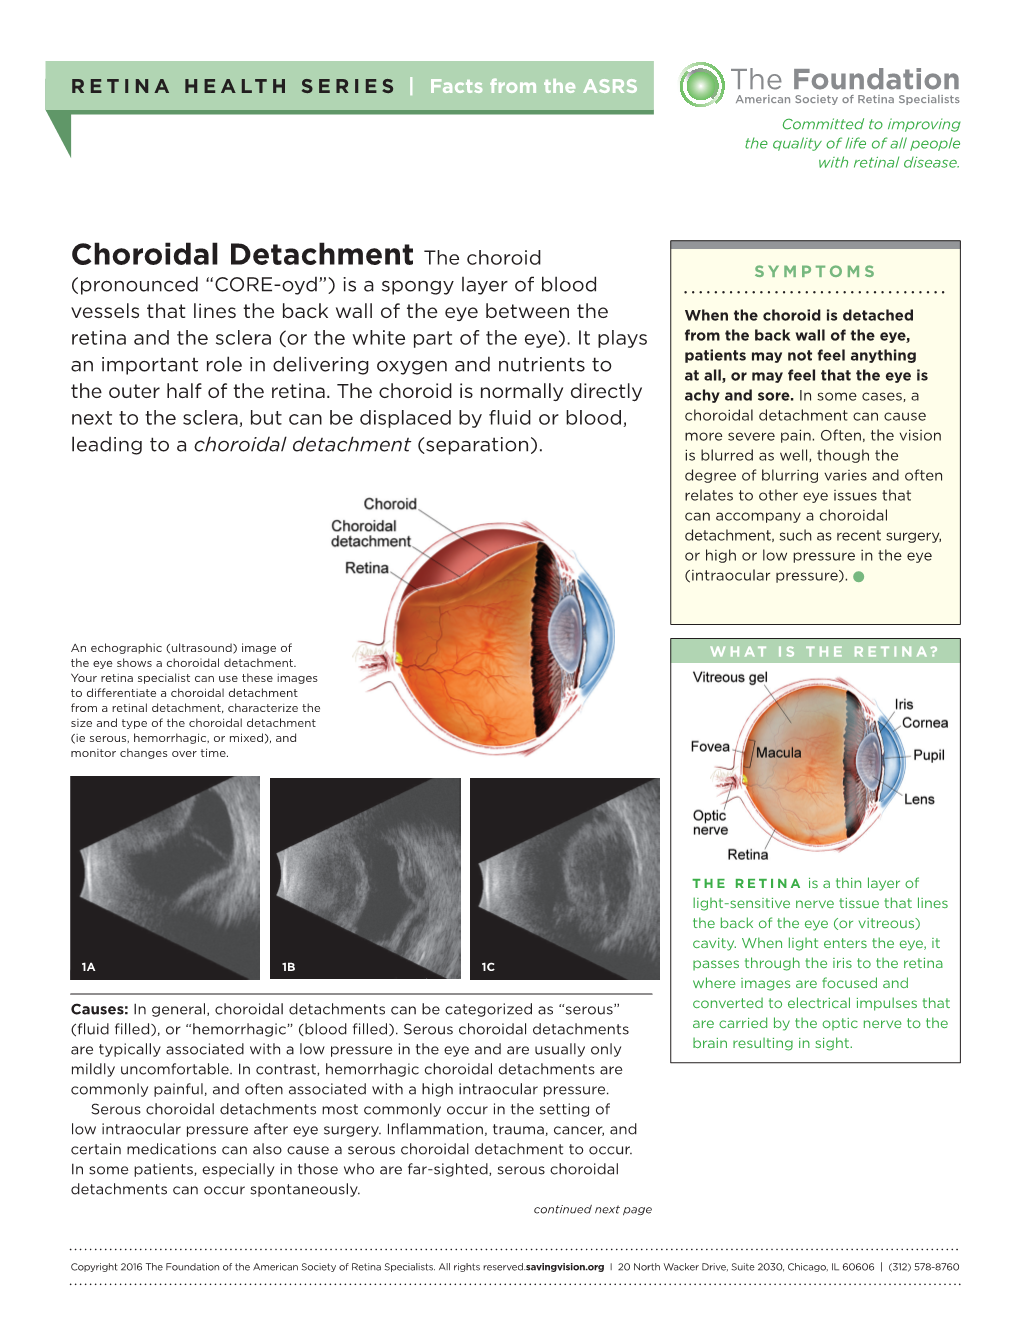 Choroidal Detachment